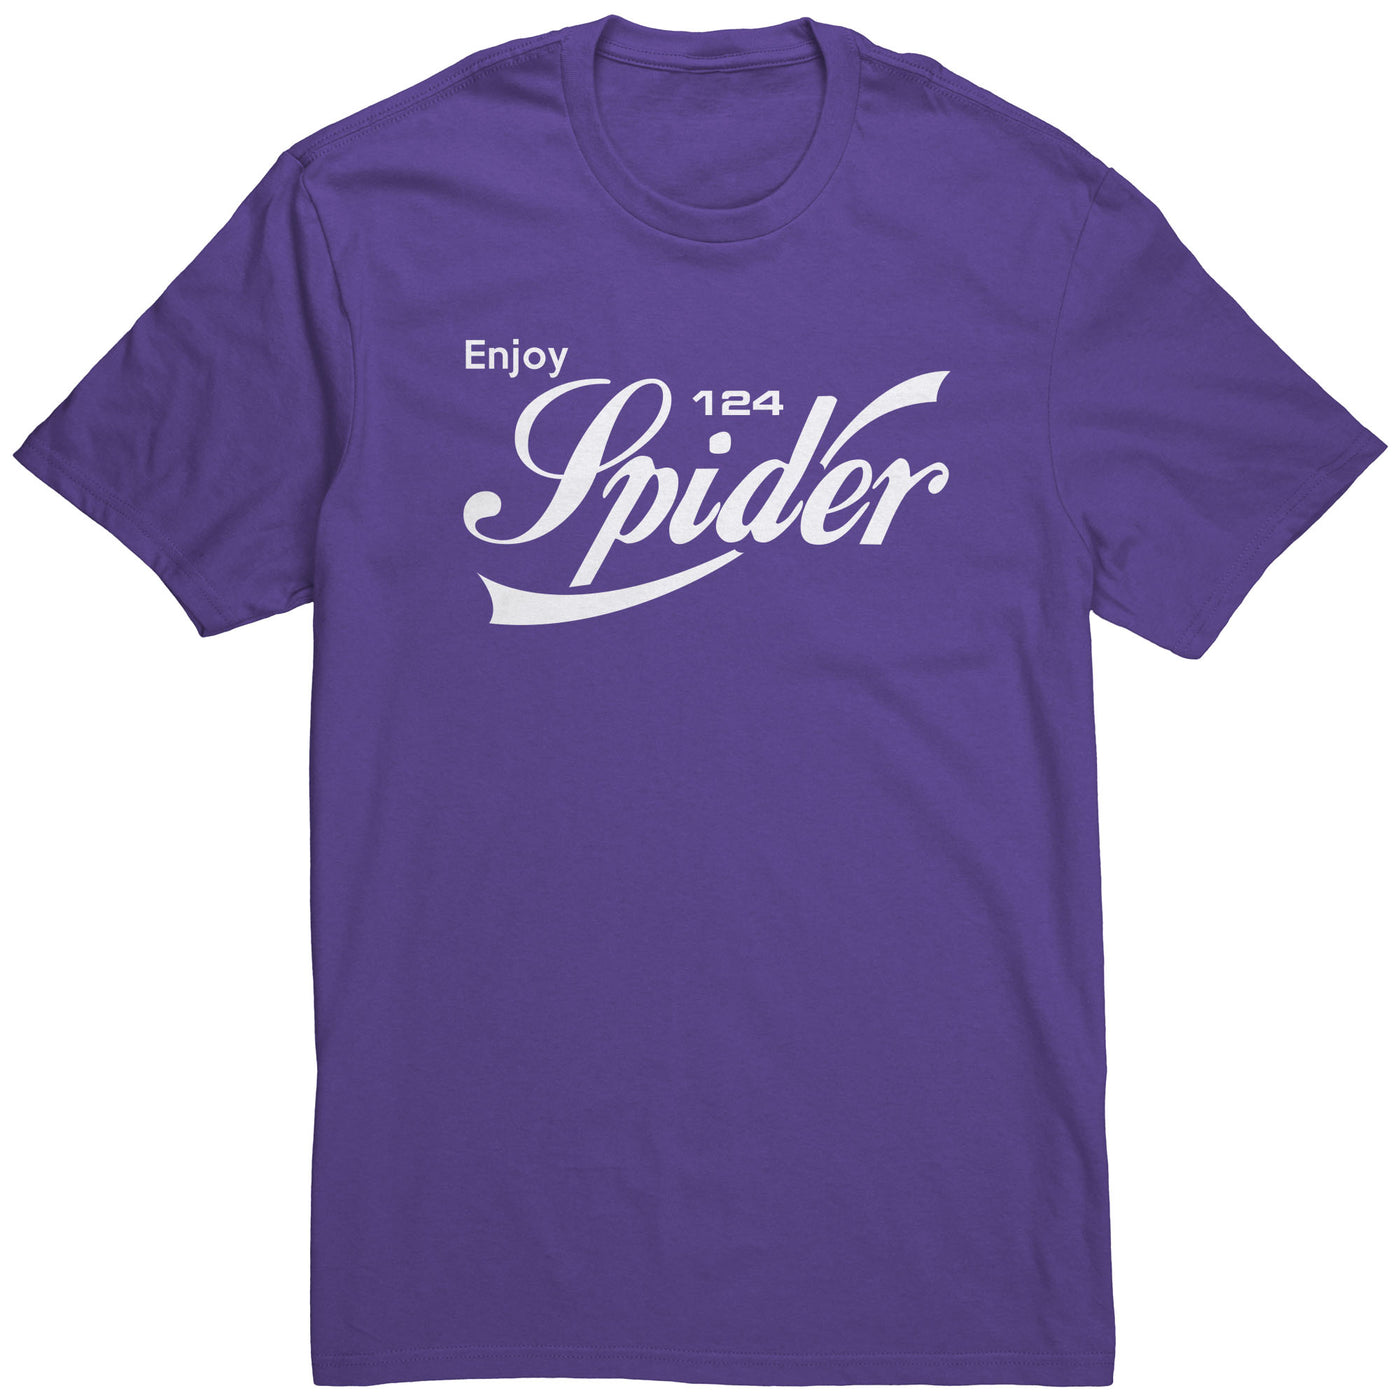 enjoy-124-spider-shirt-purple